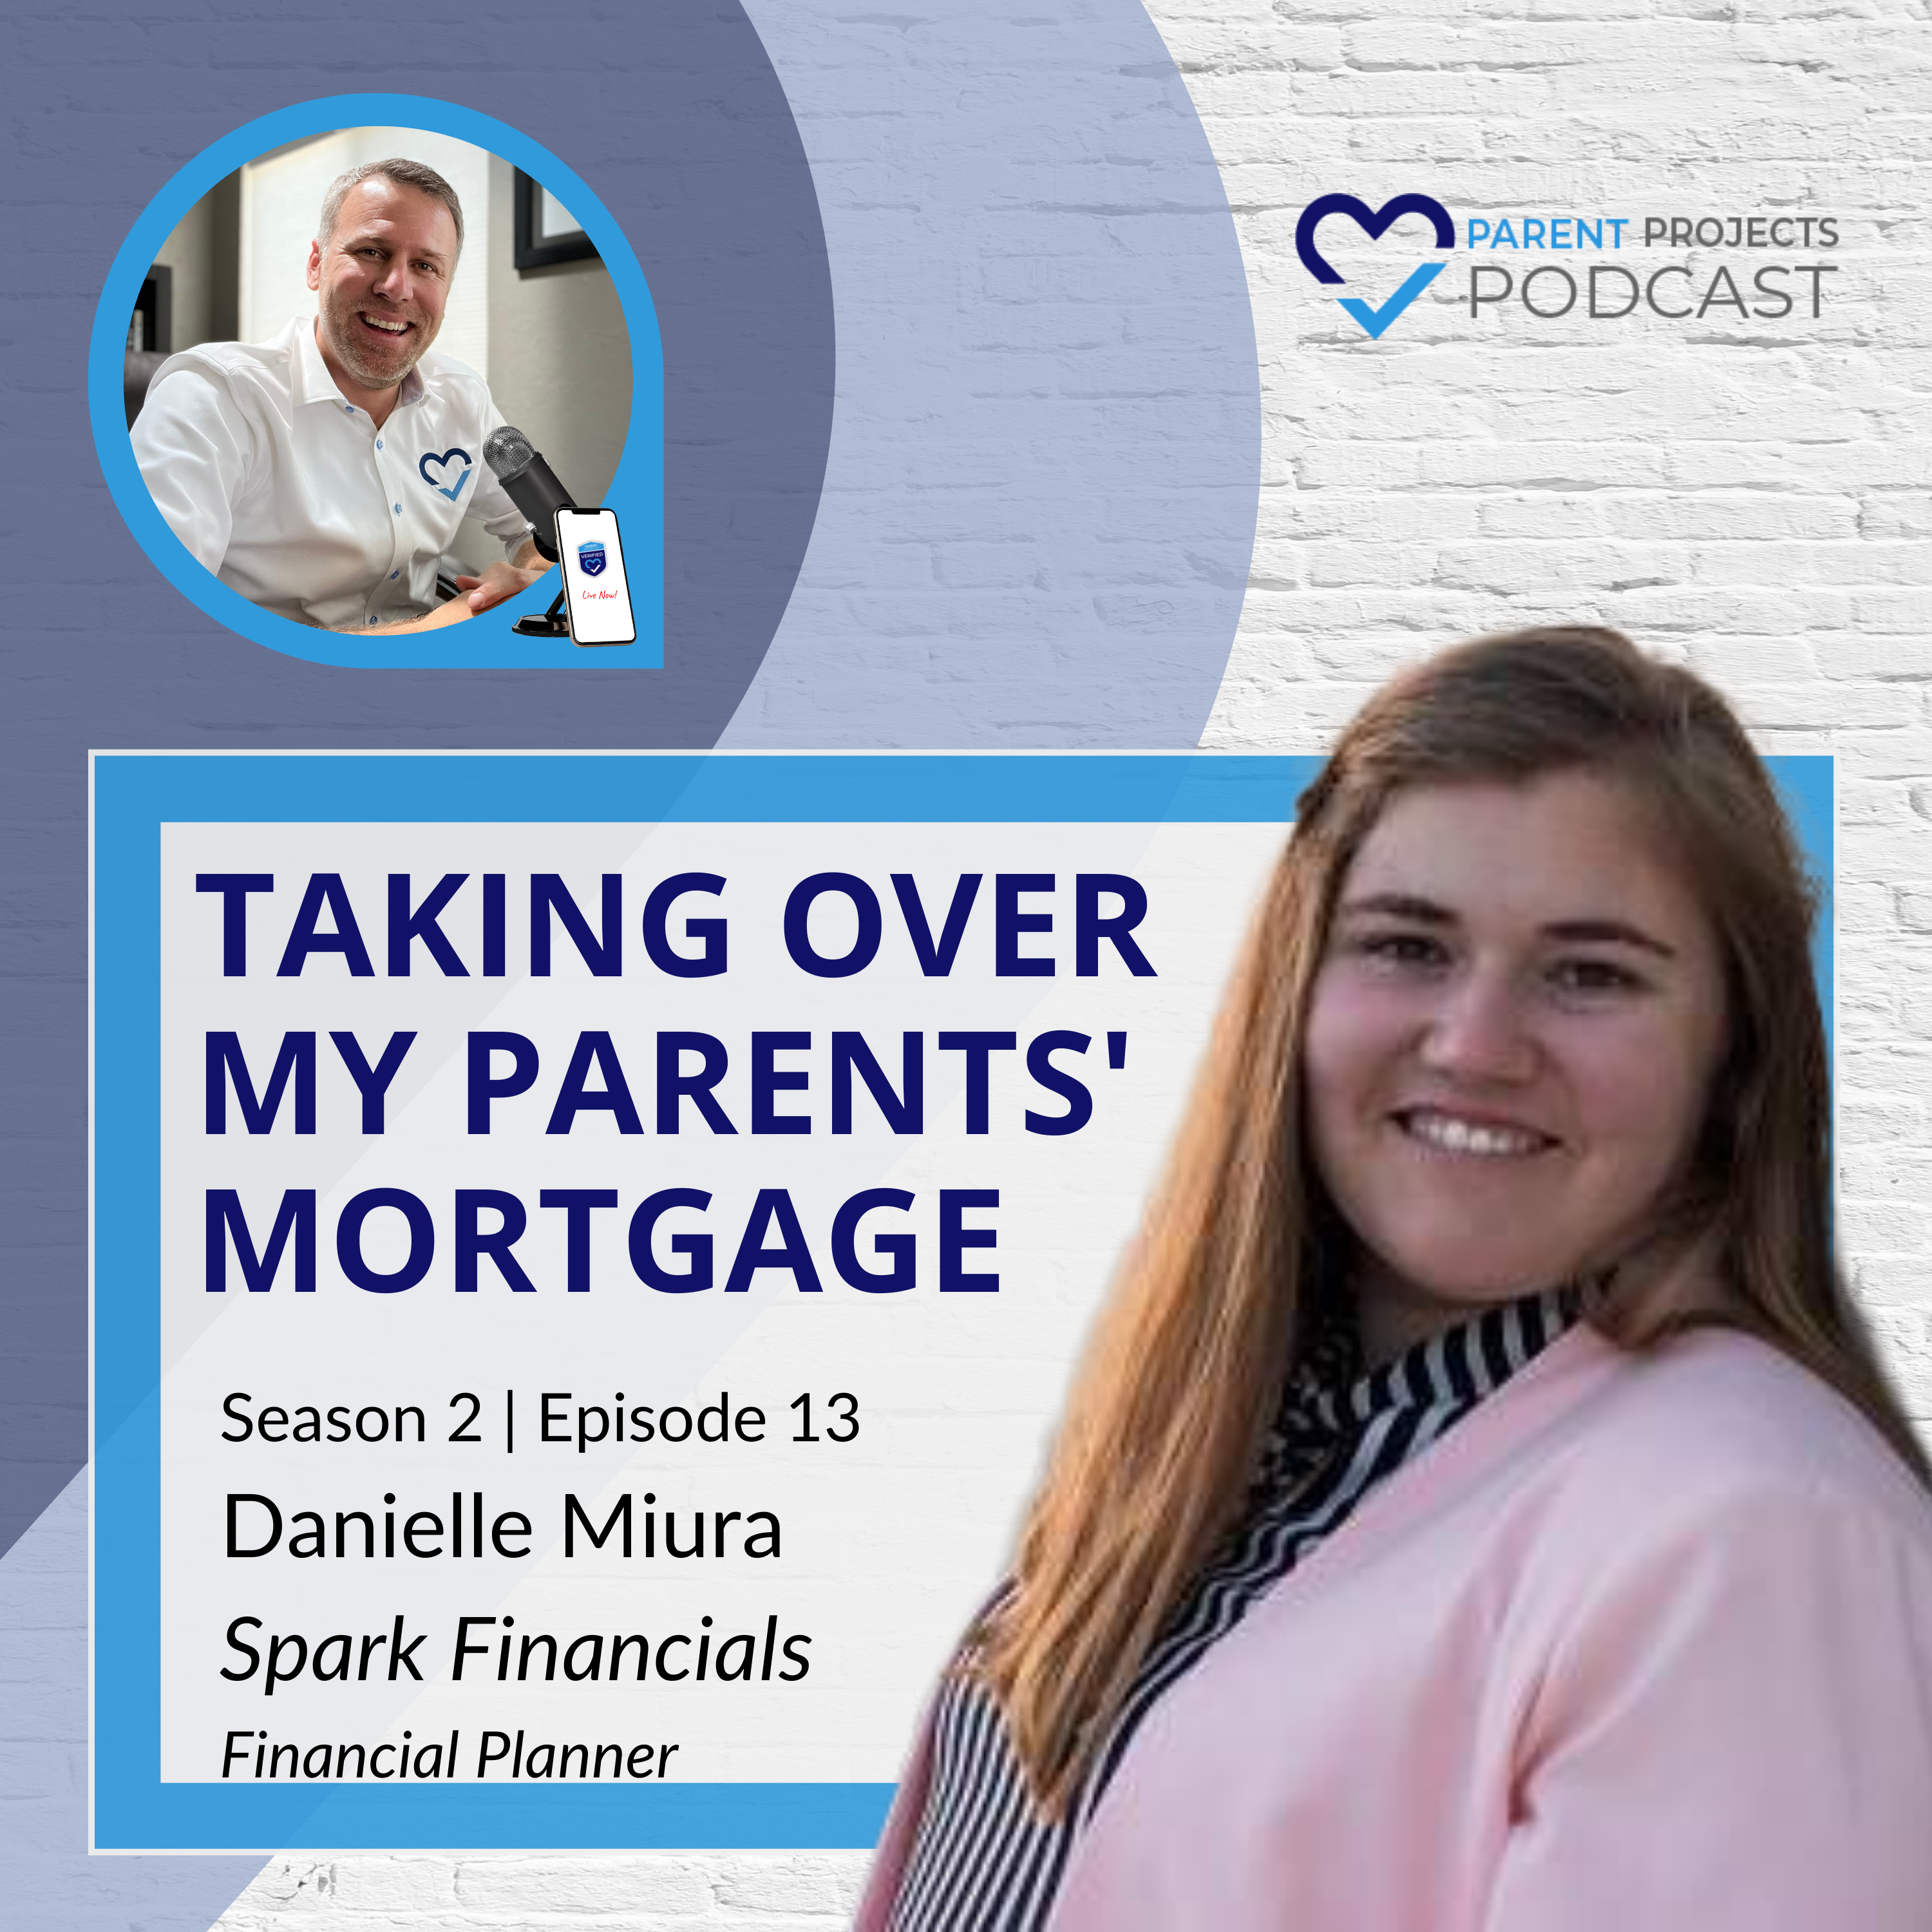 [S2:E13] Danielle Miura - Taking Over My Parents’ Mortgage